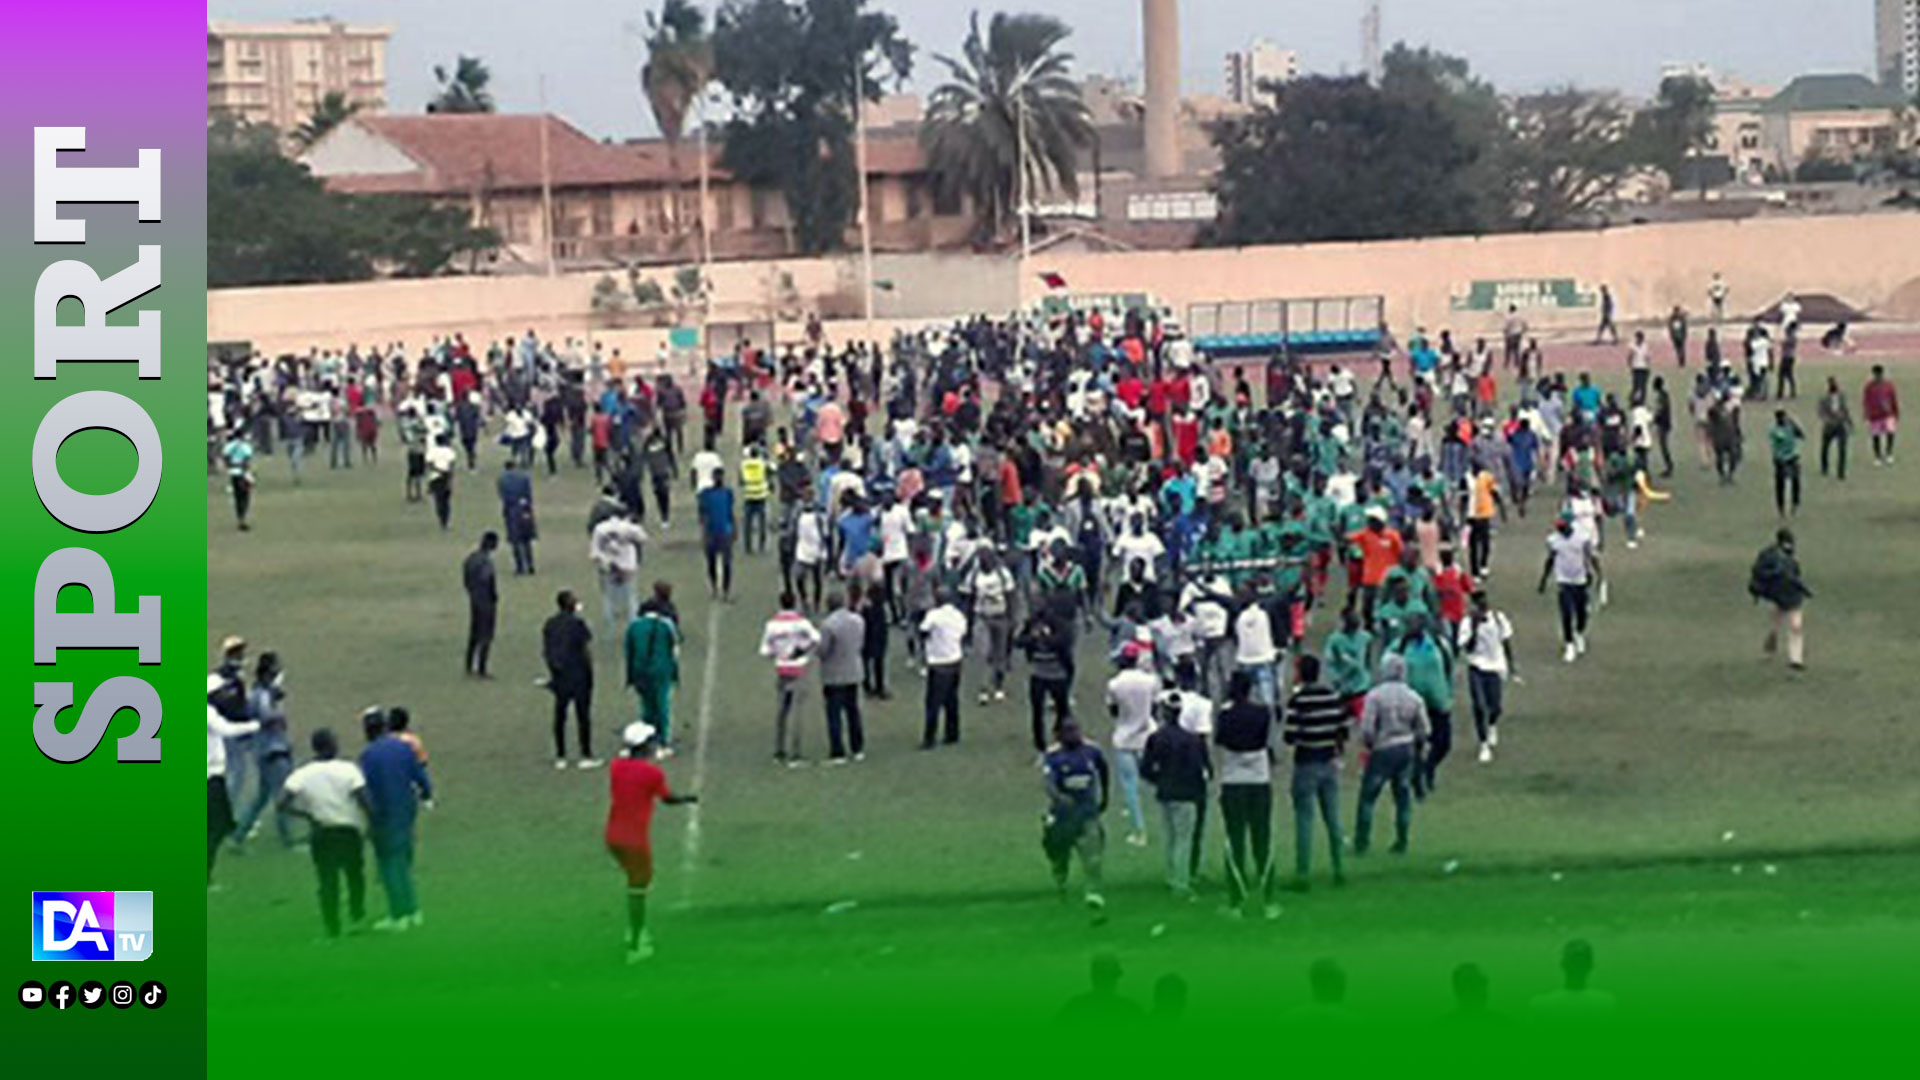 Match interrompu en demi-finale de Coupe du Sénégal : GFC lourdement sanctionné, le Jaraaf passe en finale, 3 millions d’amende et un huis clos pour chacune des équipes…